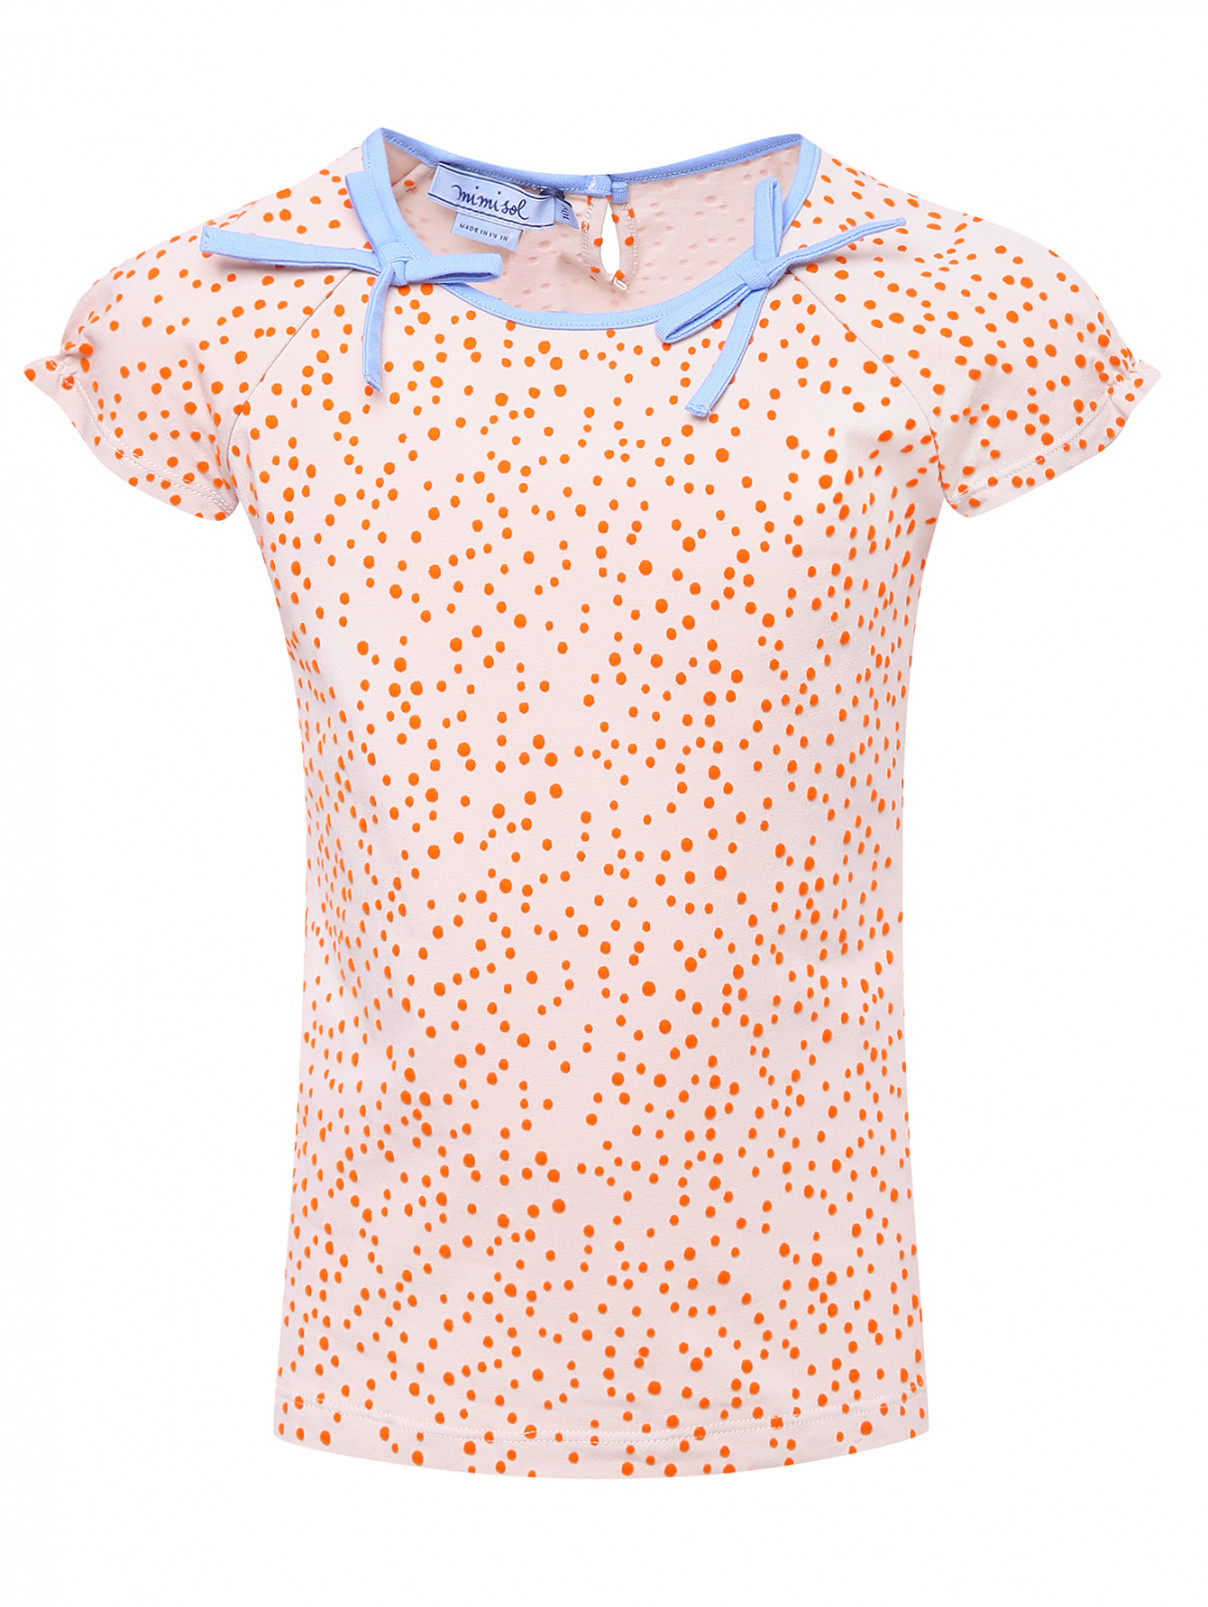 Трикотажная футболка с рельефным узором MiMiSol  –  Общий вид  – Цвет:  Бежевый